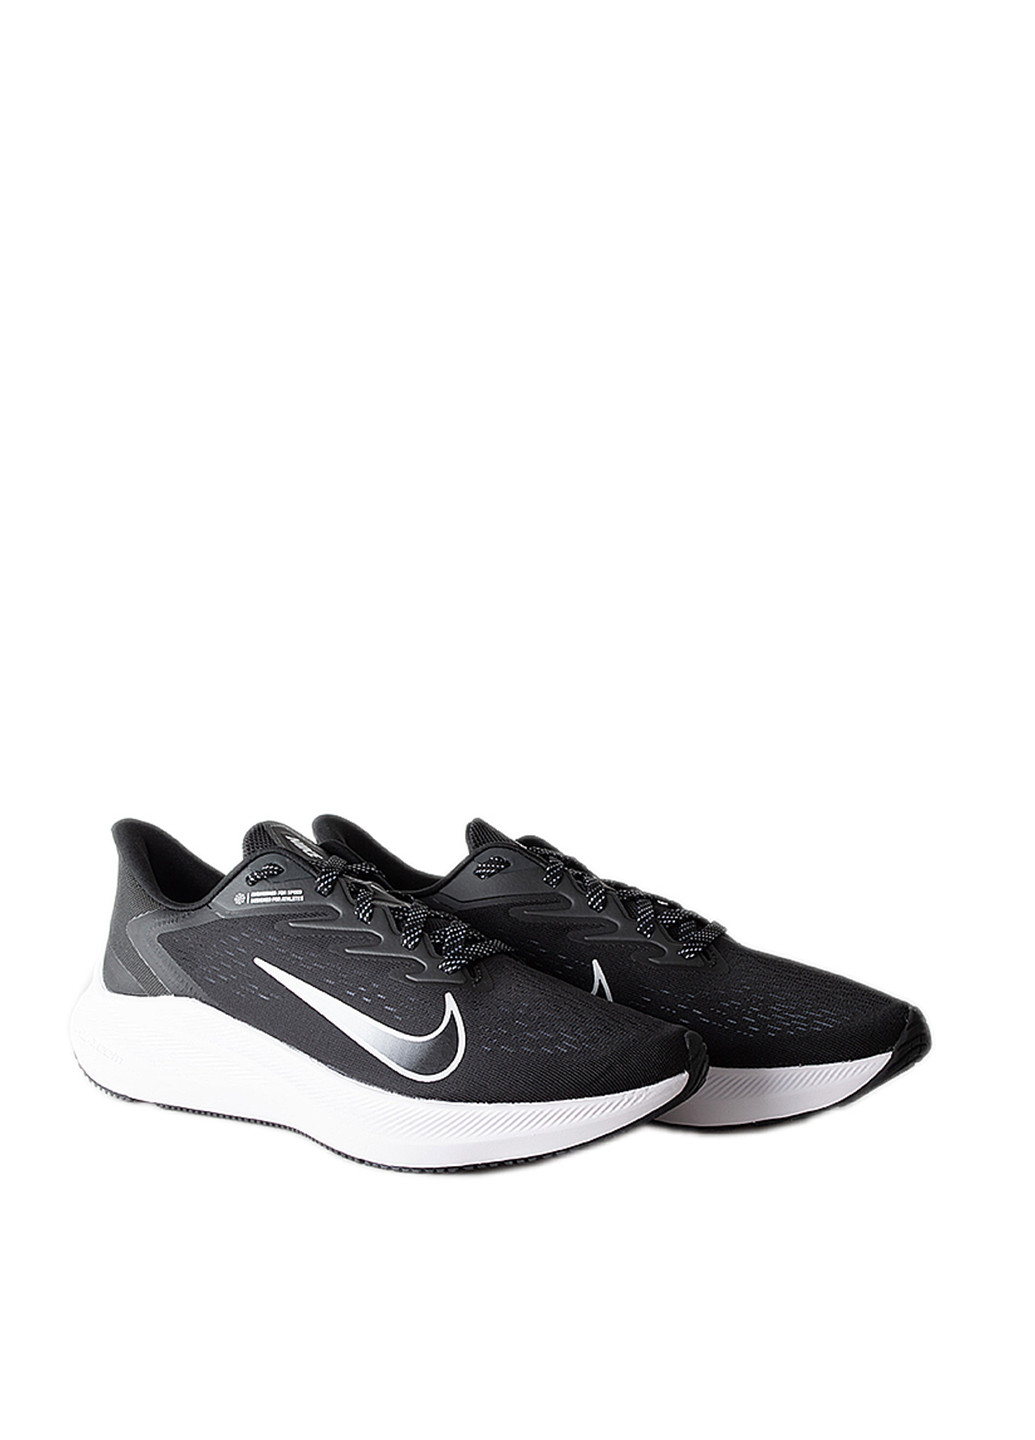 Черные всесезонные кроссовки Nike Nike Air Zoom Winflo 7